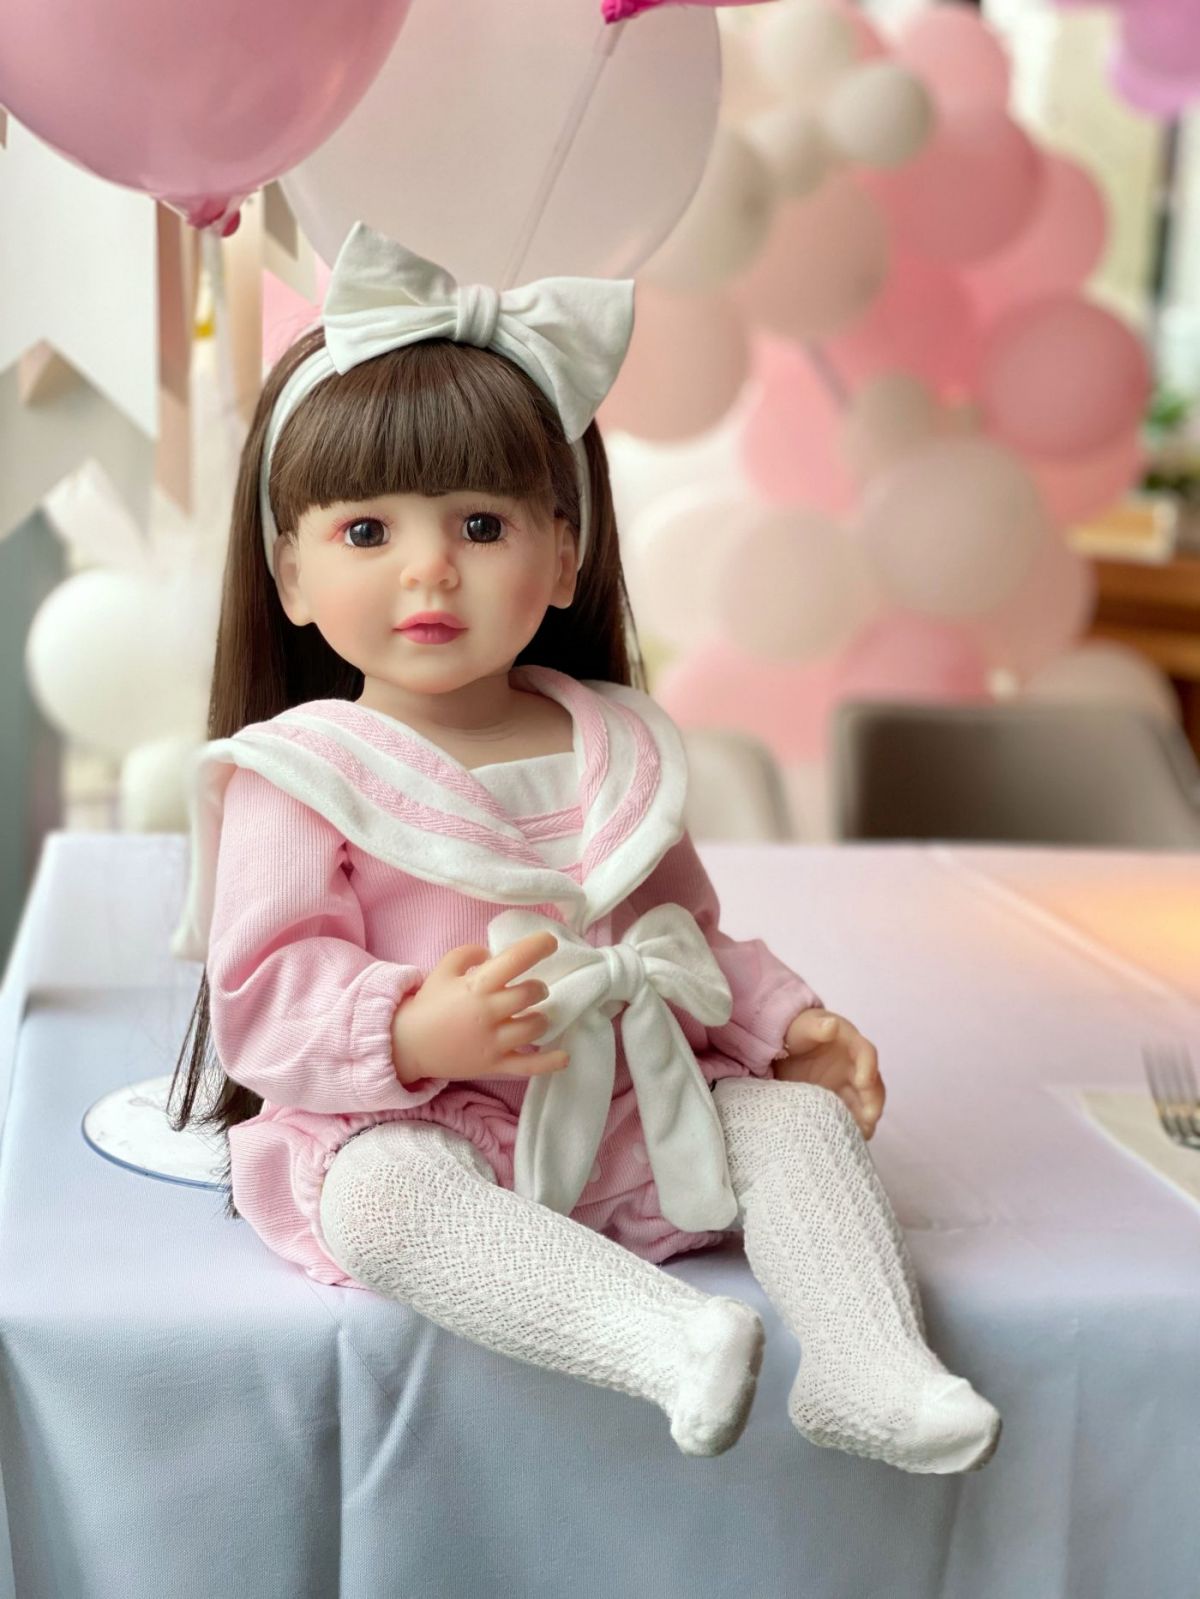 Reborn Baby Dolls Silicone Cute Soft Baby Doll Fashion Bebe Reborn Dolls 55cm Baby Toys for Girls (6)